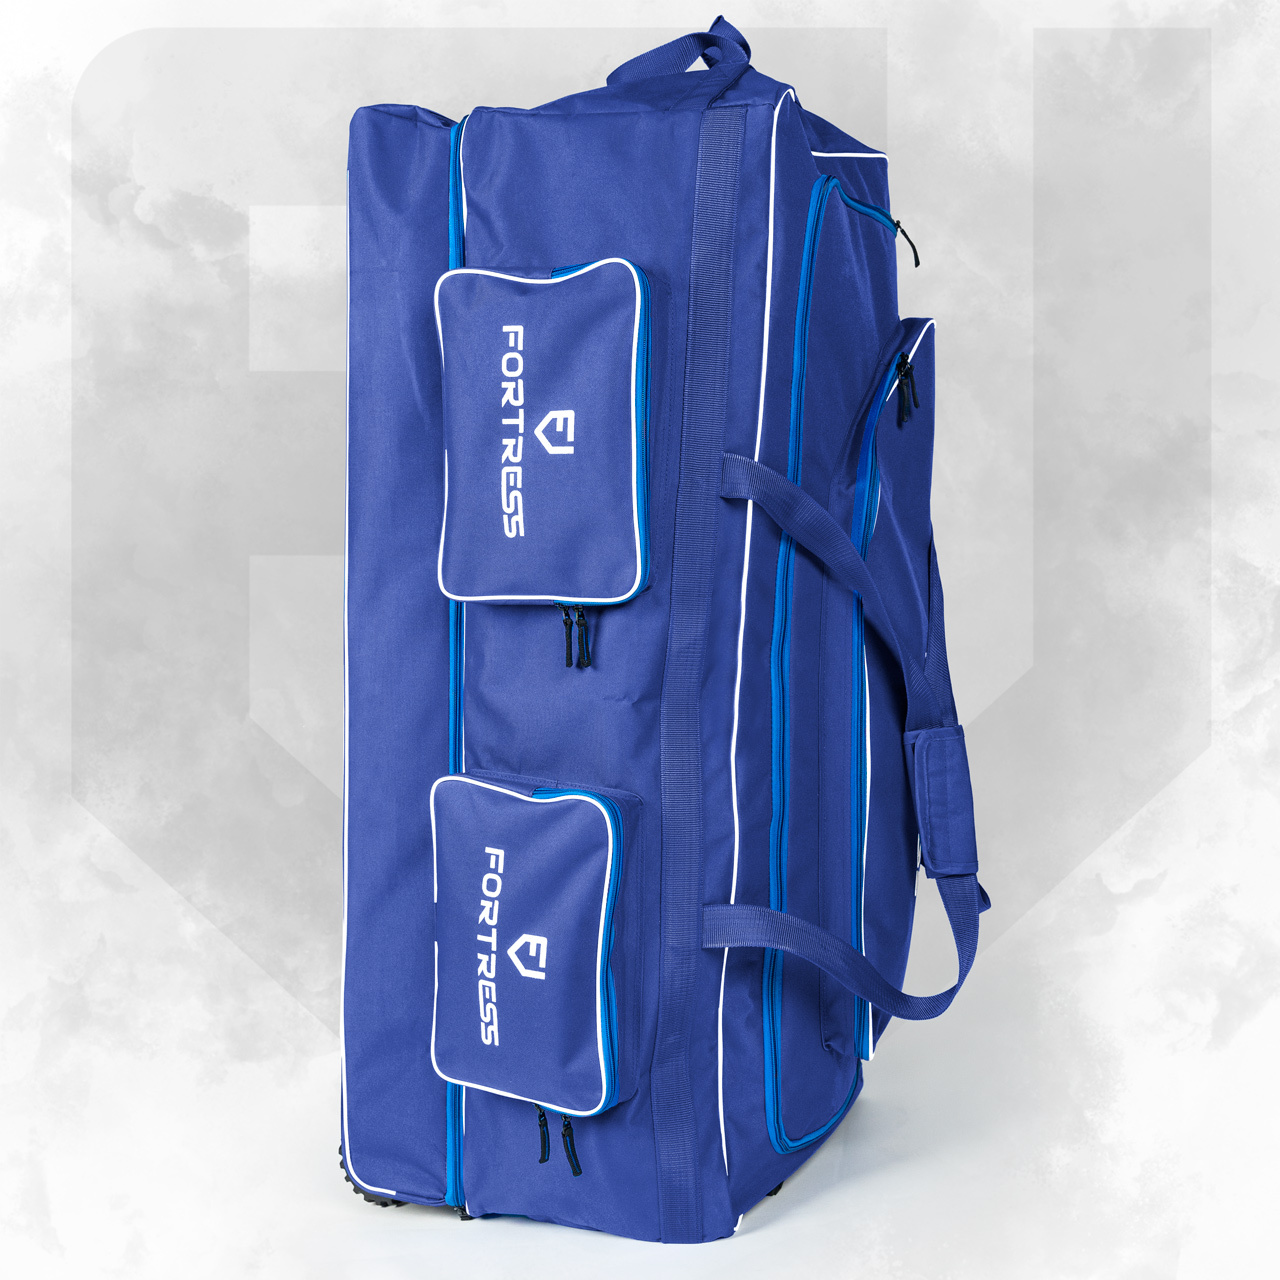 FORTRESS Original Pro XL Wheelie Cricket Bag [260L]